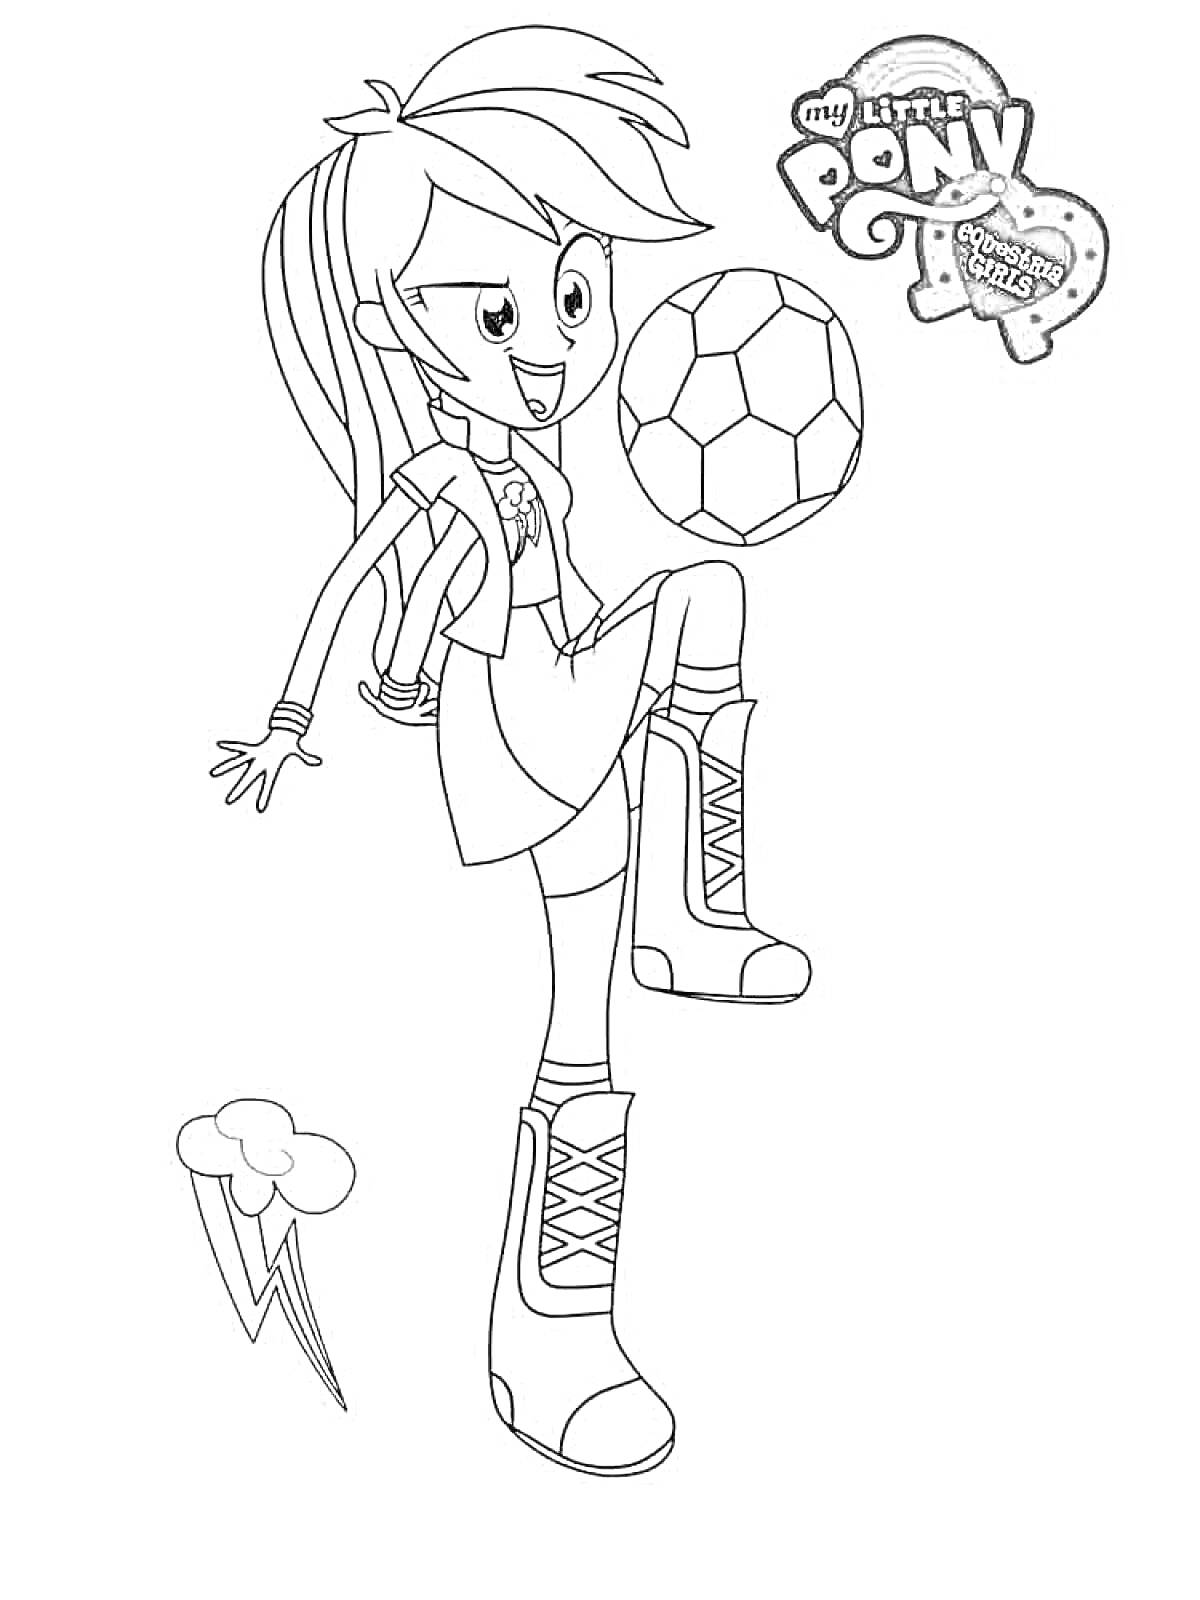 Раскраска Девушка из Эквестрии играет с футбольным мячом, логотип My Little Pony, молния и облако